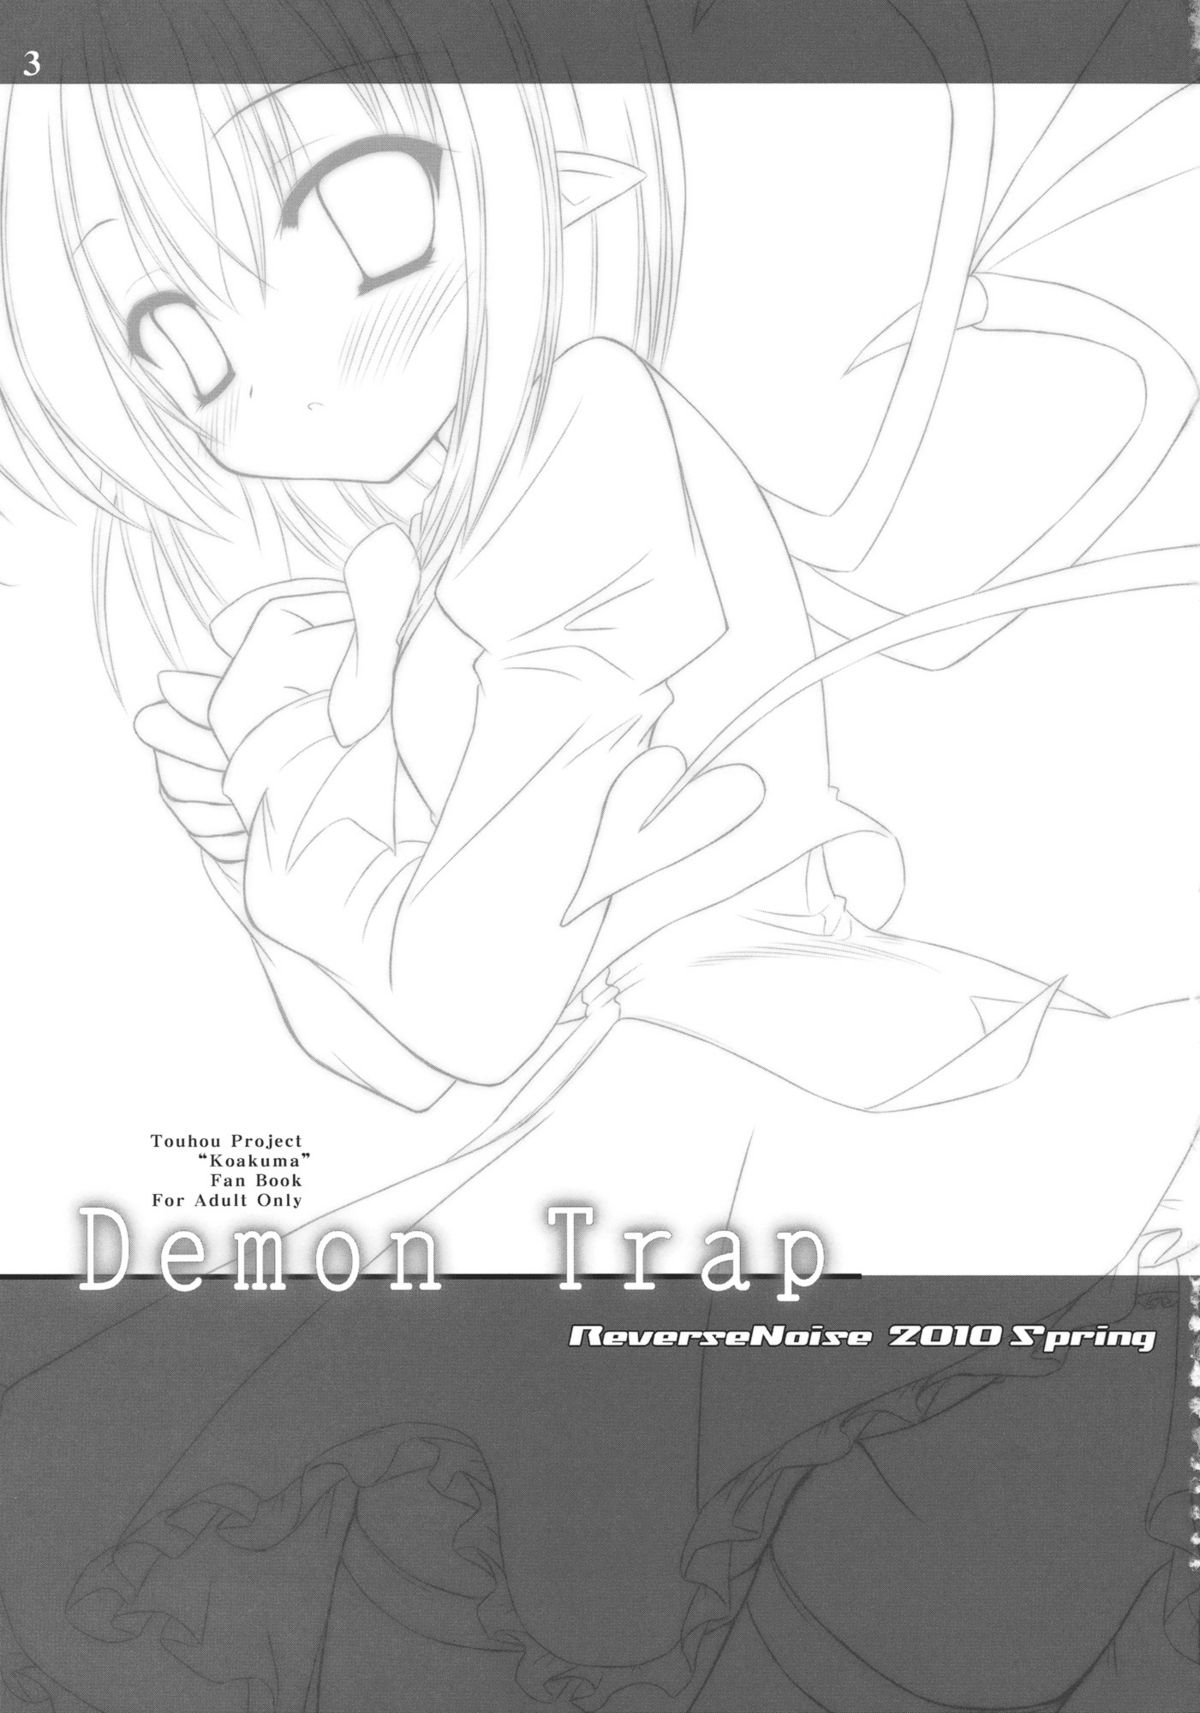 (Reitaisai 7) [Reverse Noise (Yamu)] Demon Trap (Touhou Project) page 2 full